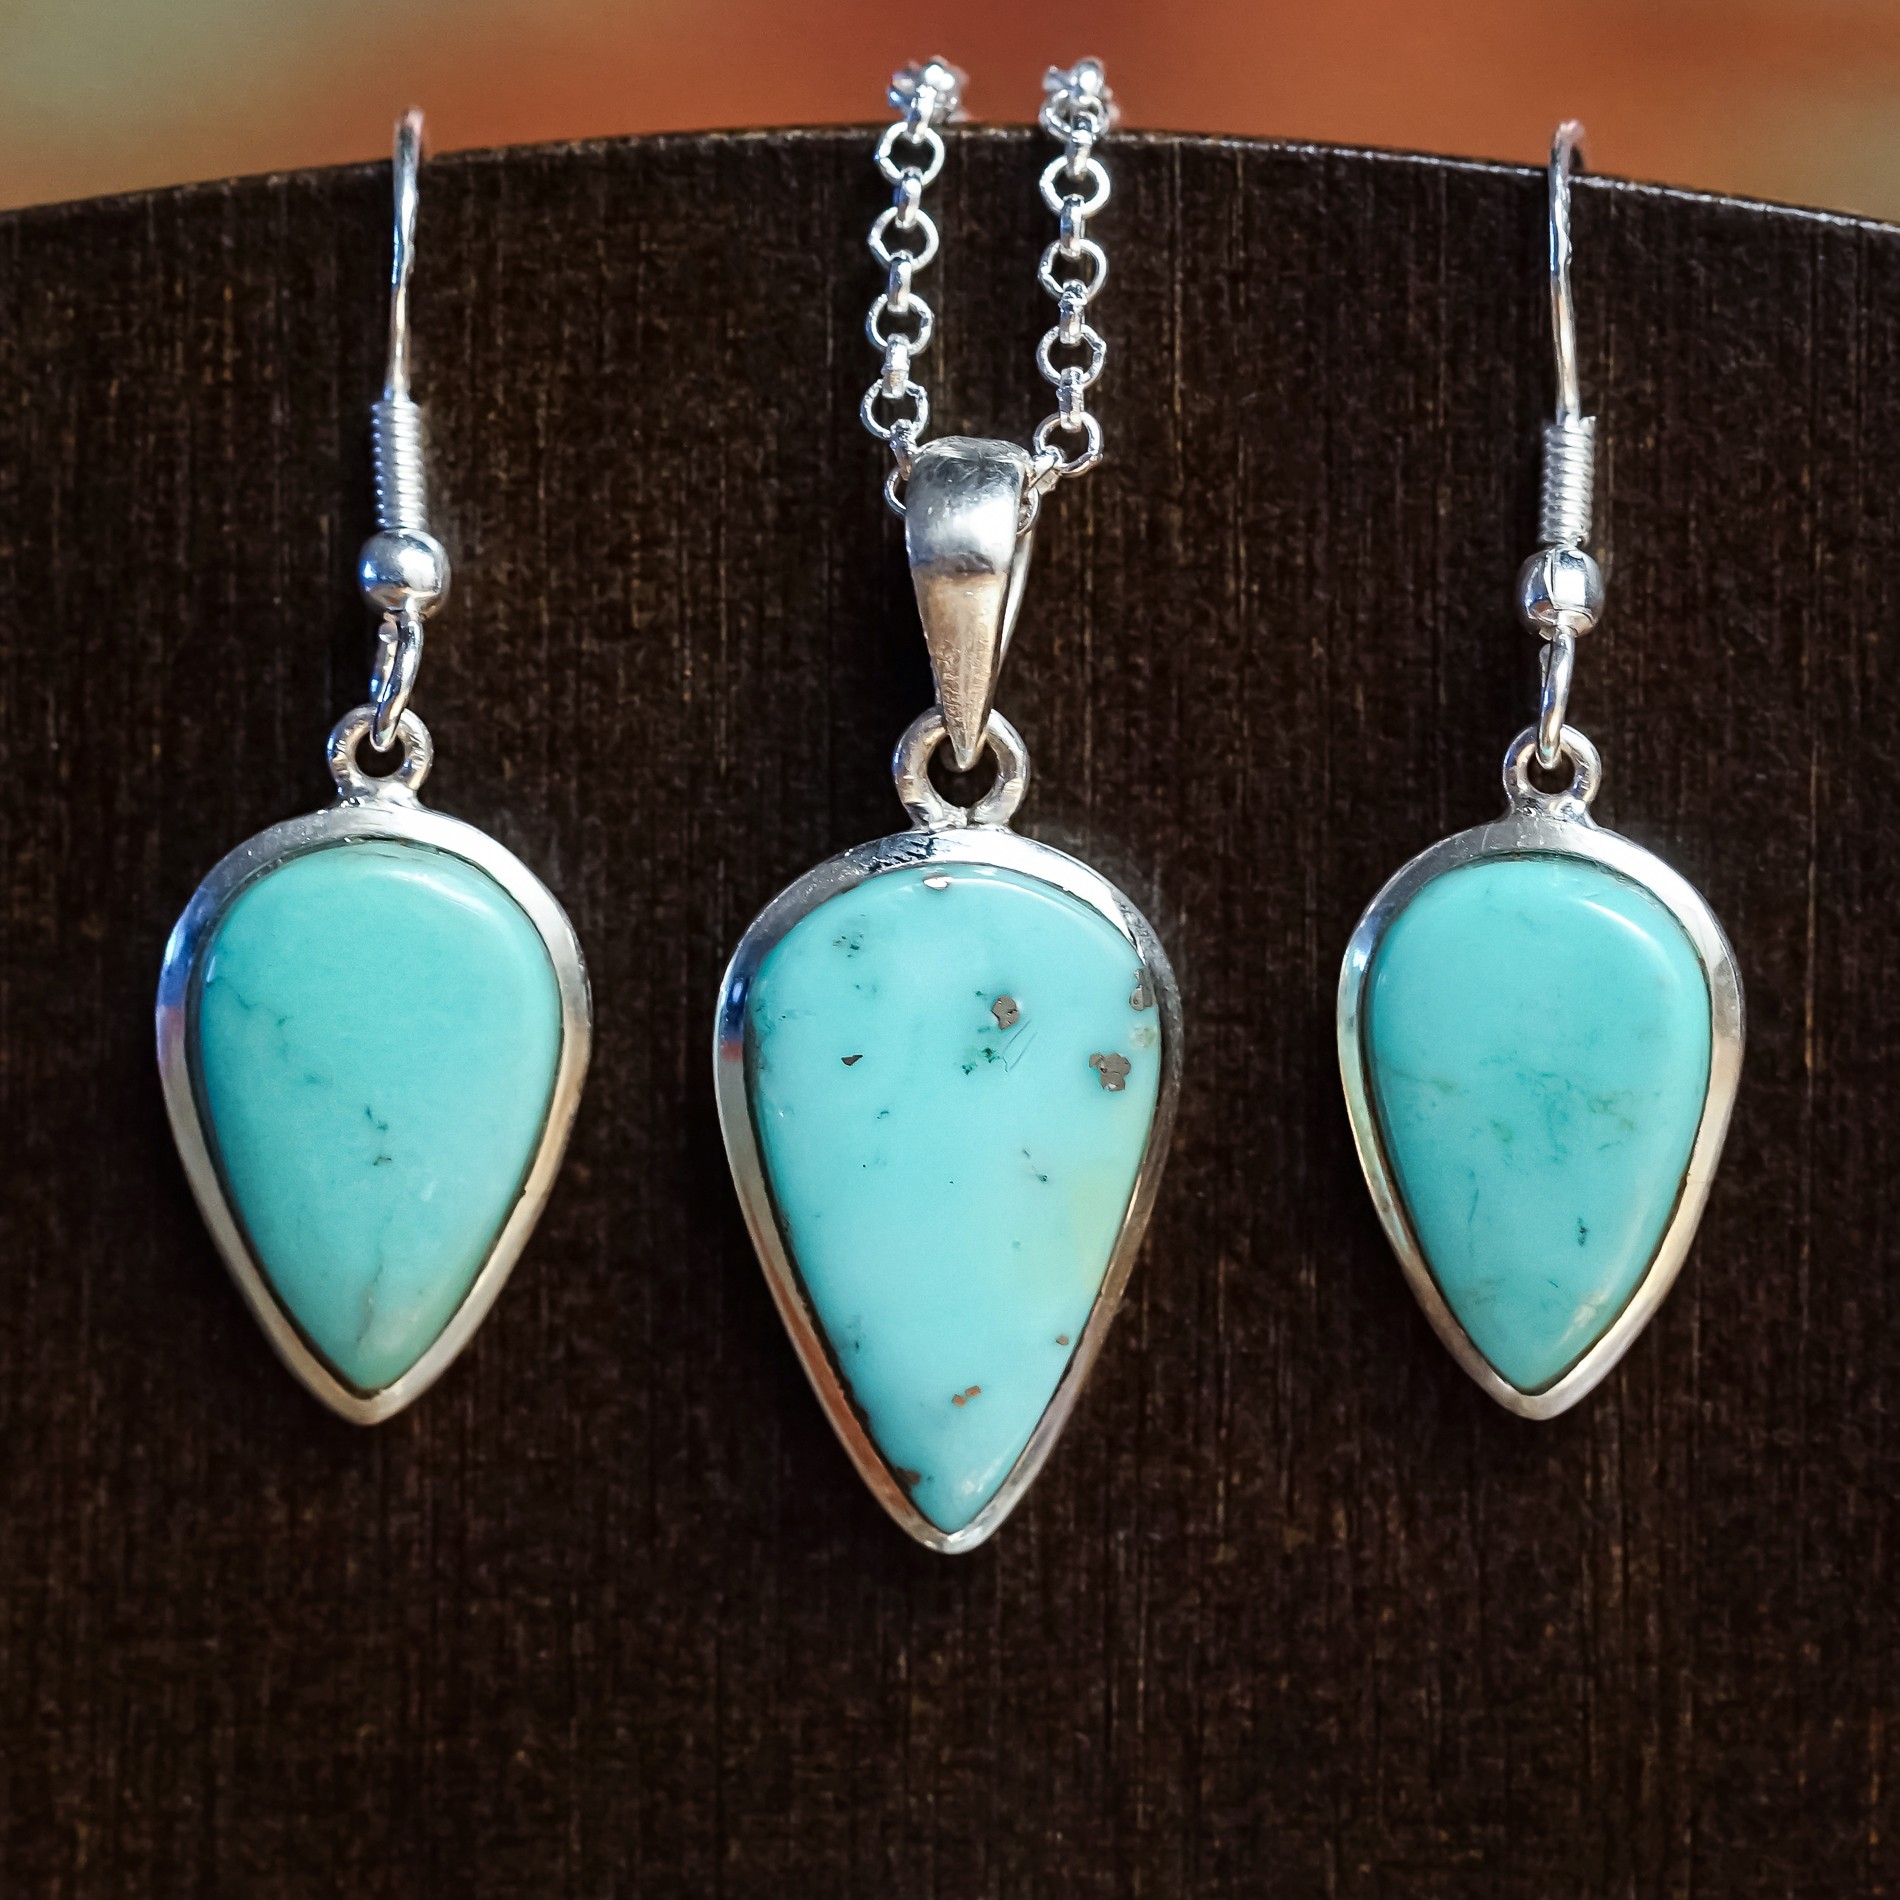 sleeping beauty turquoise earring and pendant set